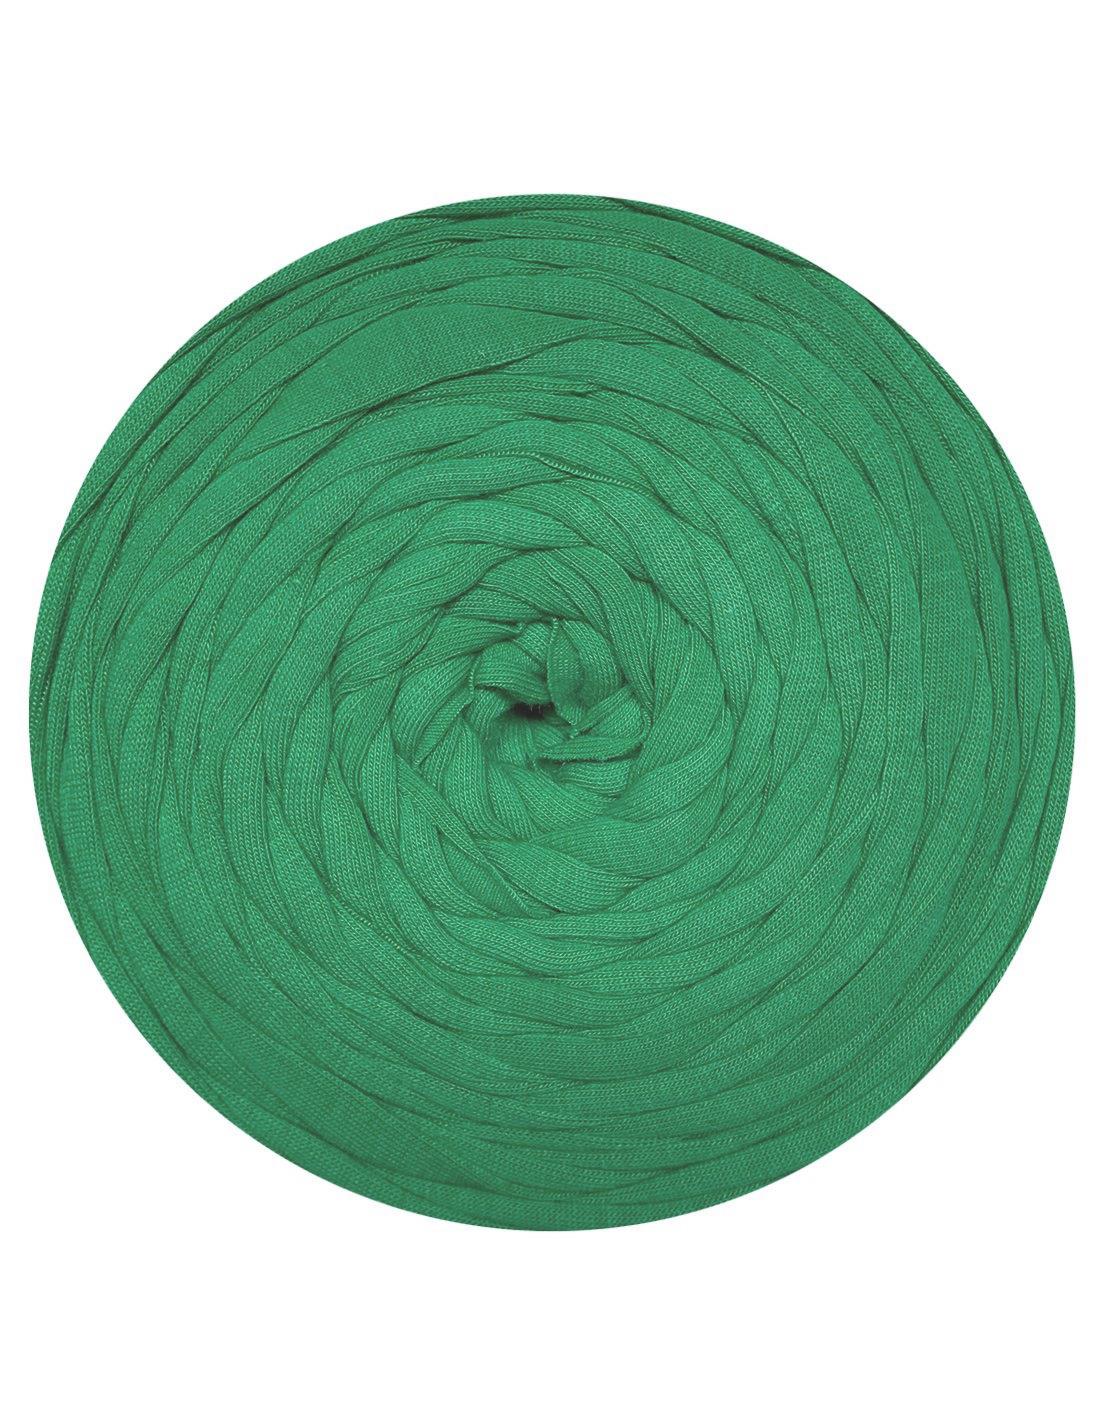 Muted green t-shirt yarn (100-120m)